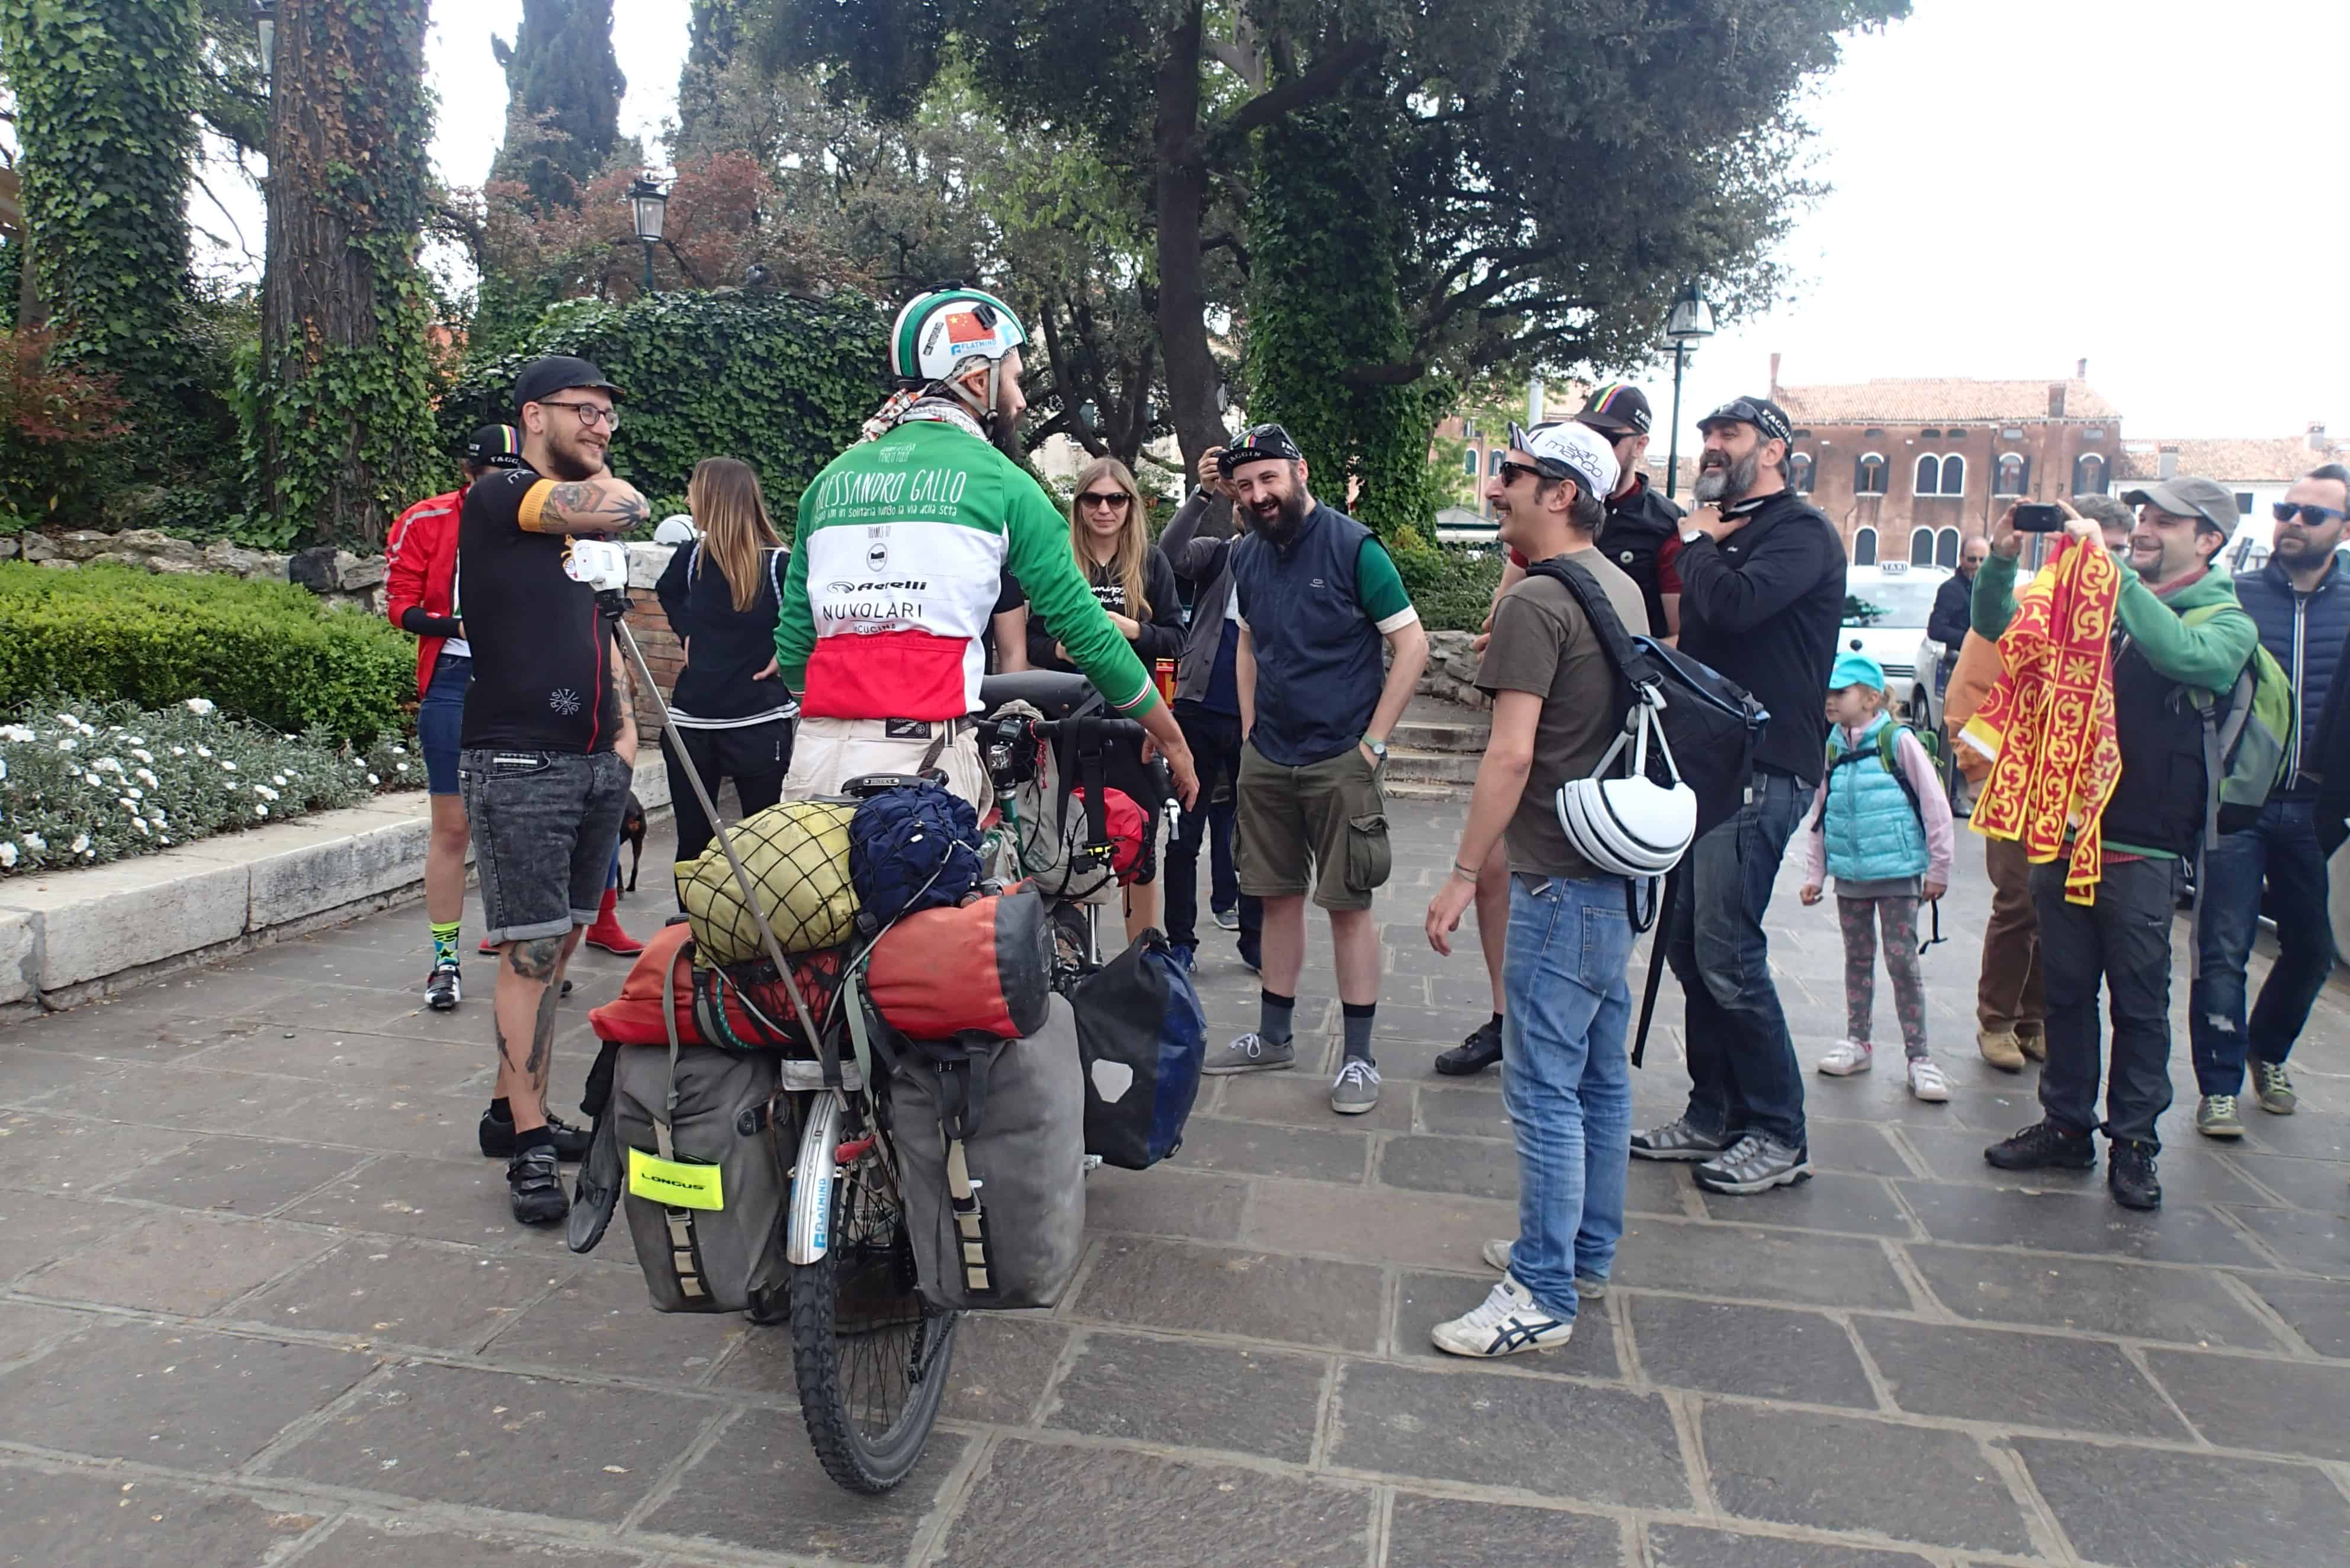 Alessandros ontvangst door zijn fietsvrienden in Venetie. Klaar voor de laatste 50km!